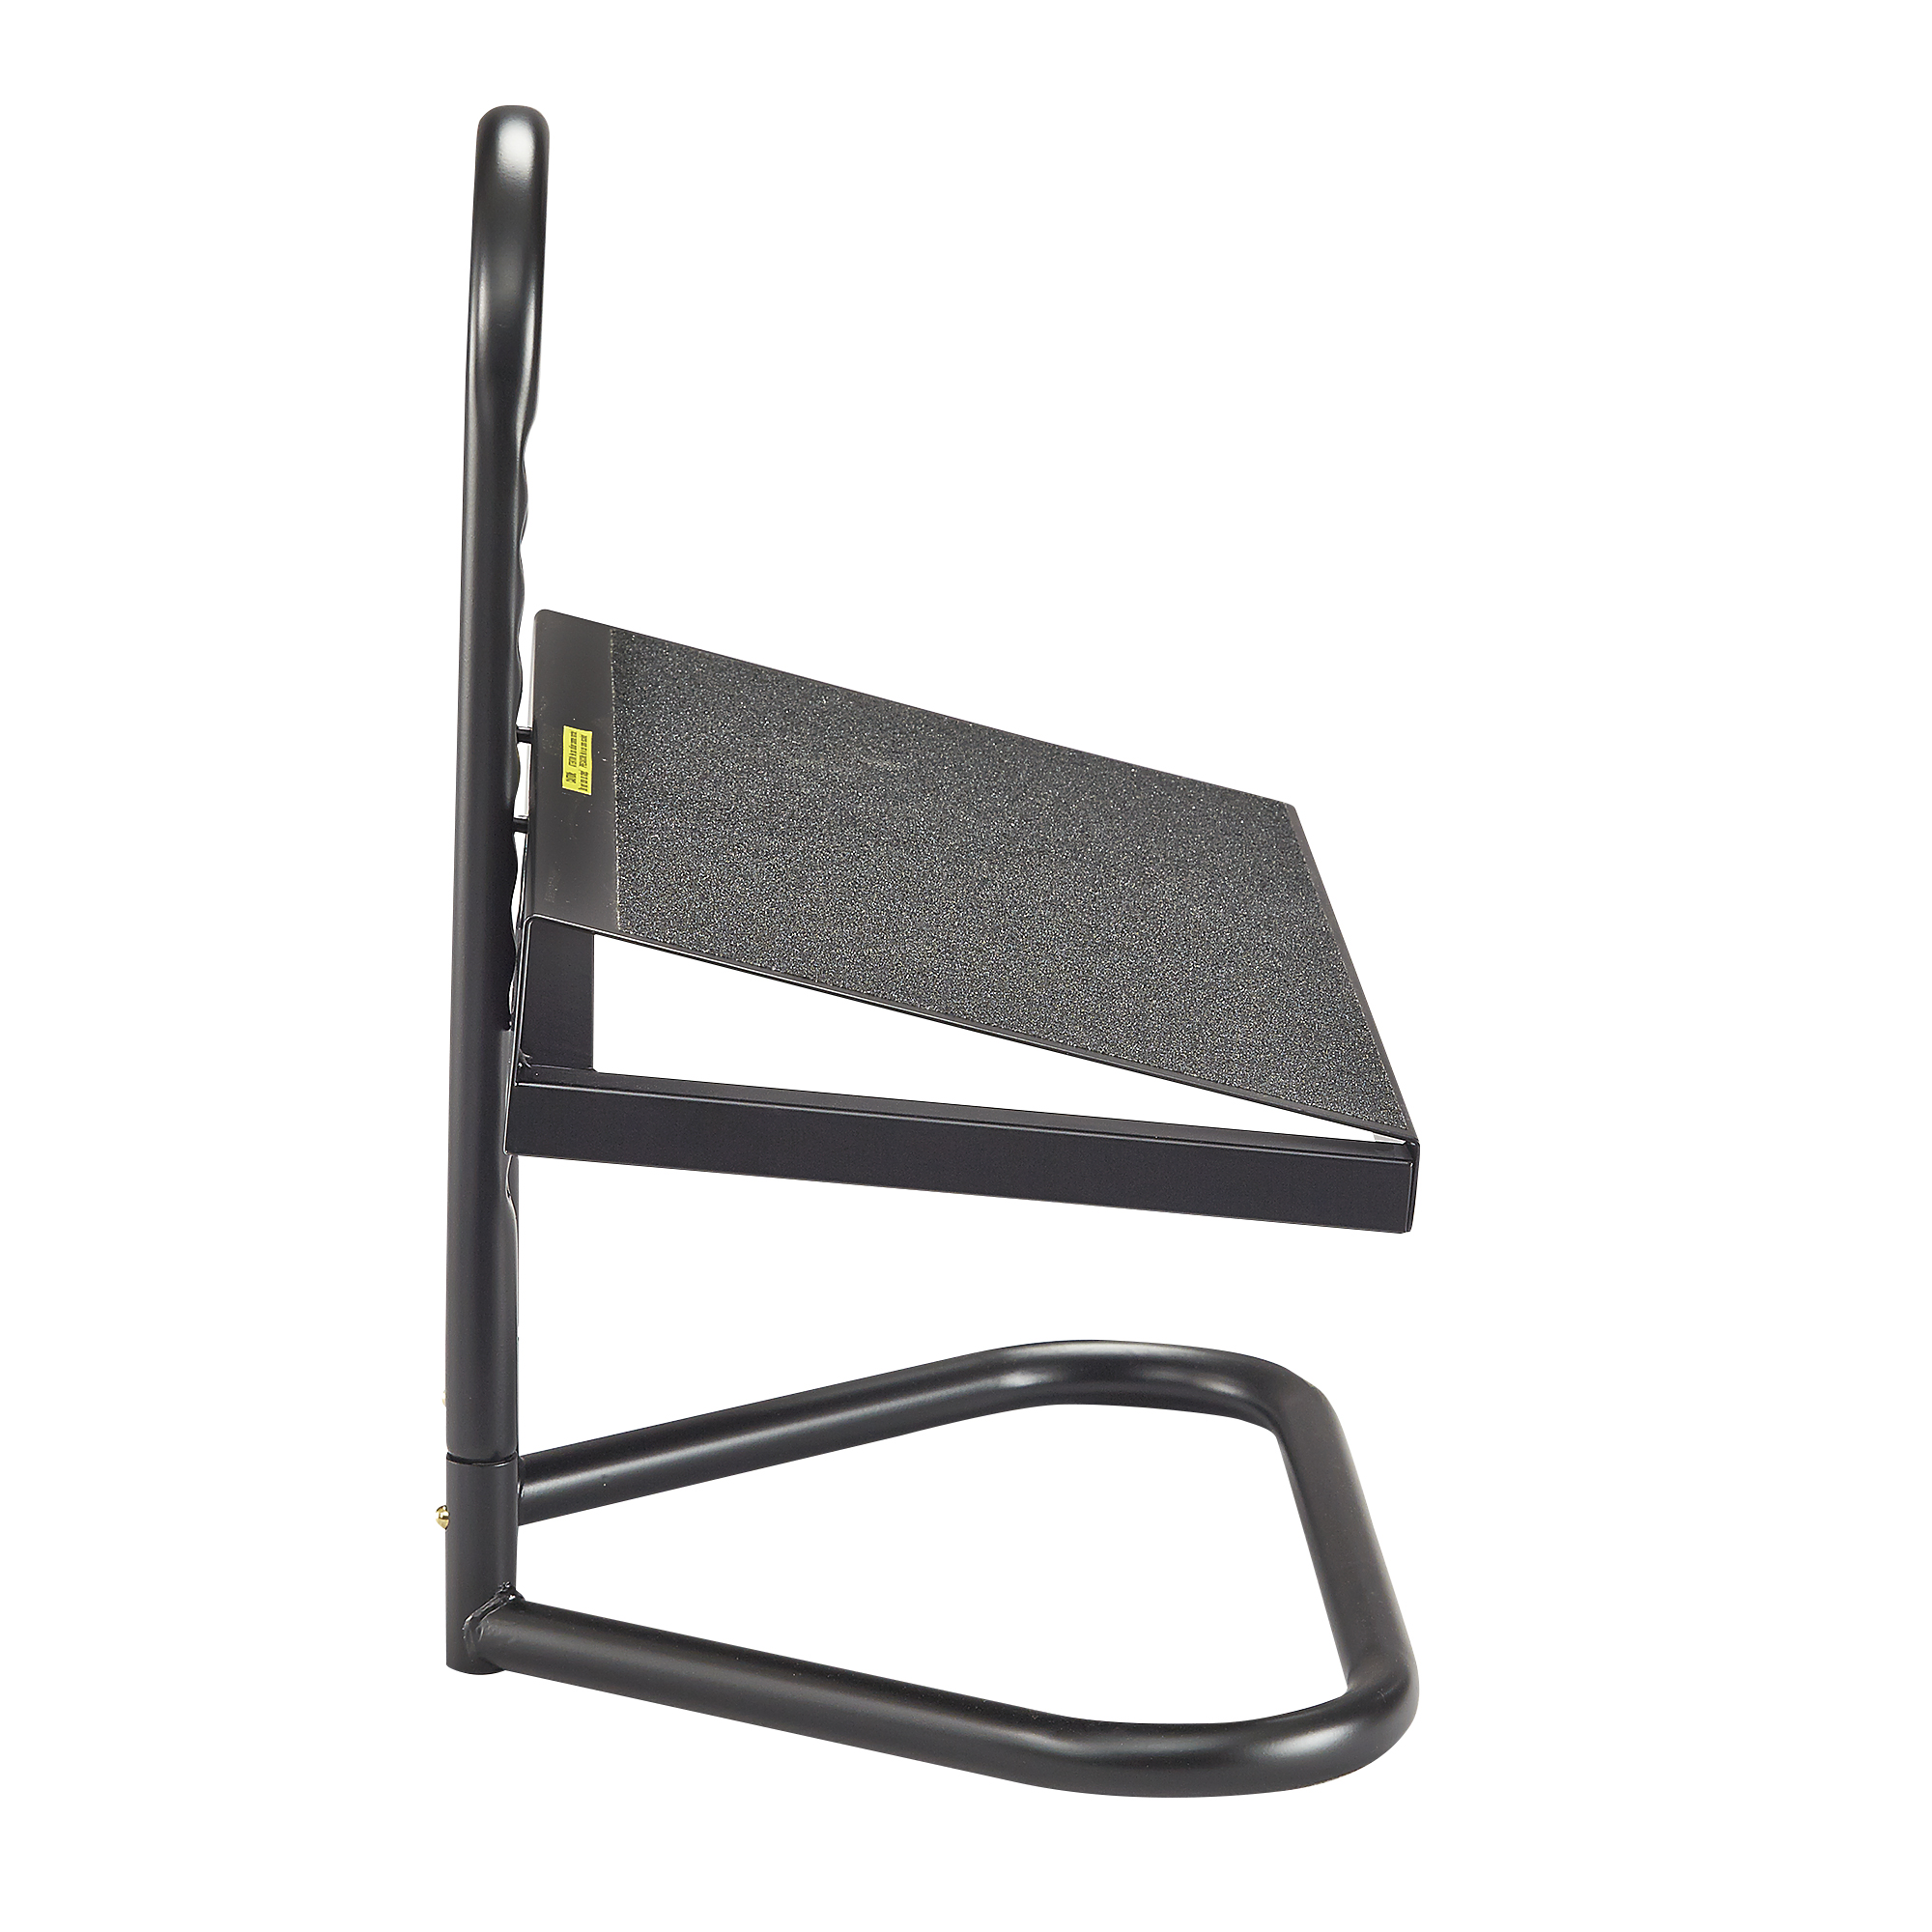 Safco Products Ergo-Comfort 8 Inch High Adjustable Footrest, Black (2106)